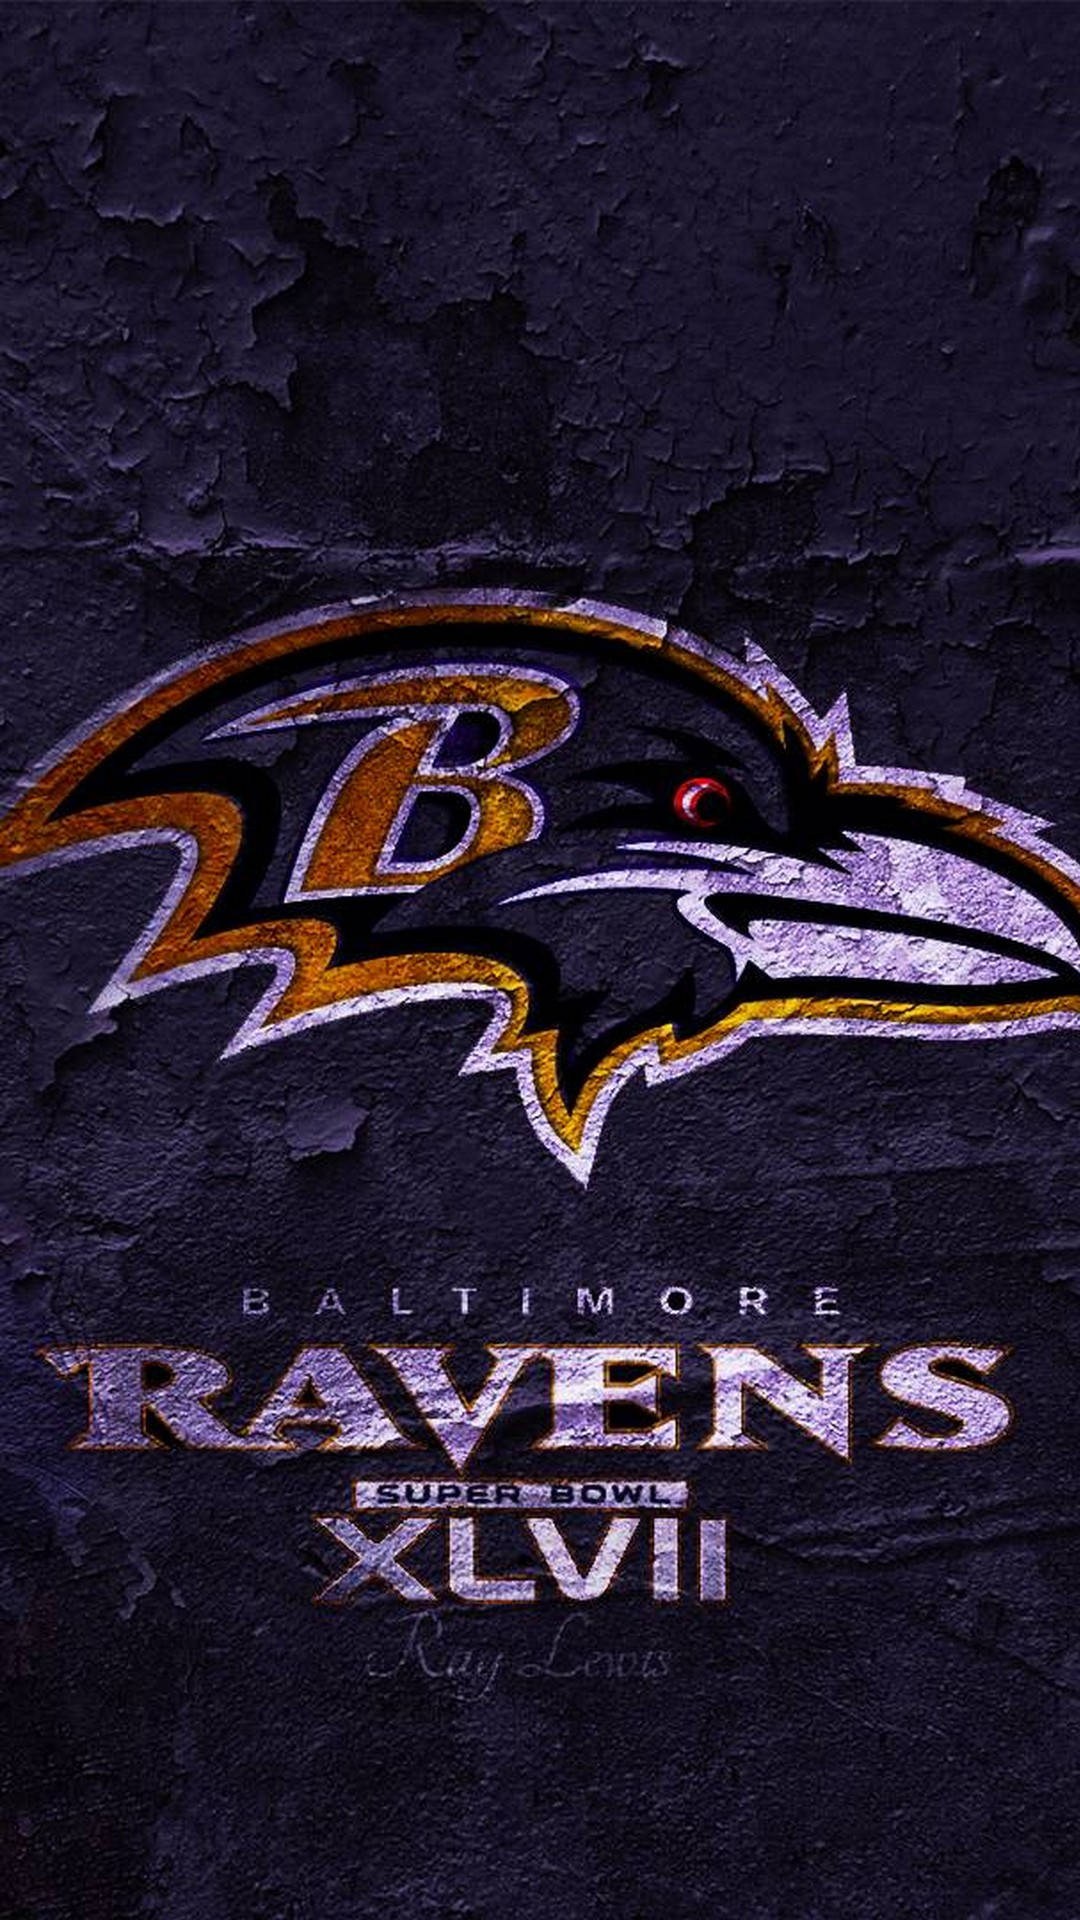 Vis din stolthed med Baltimore Ravens iPhone! Wallpaper